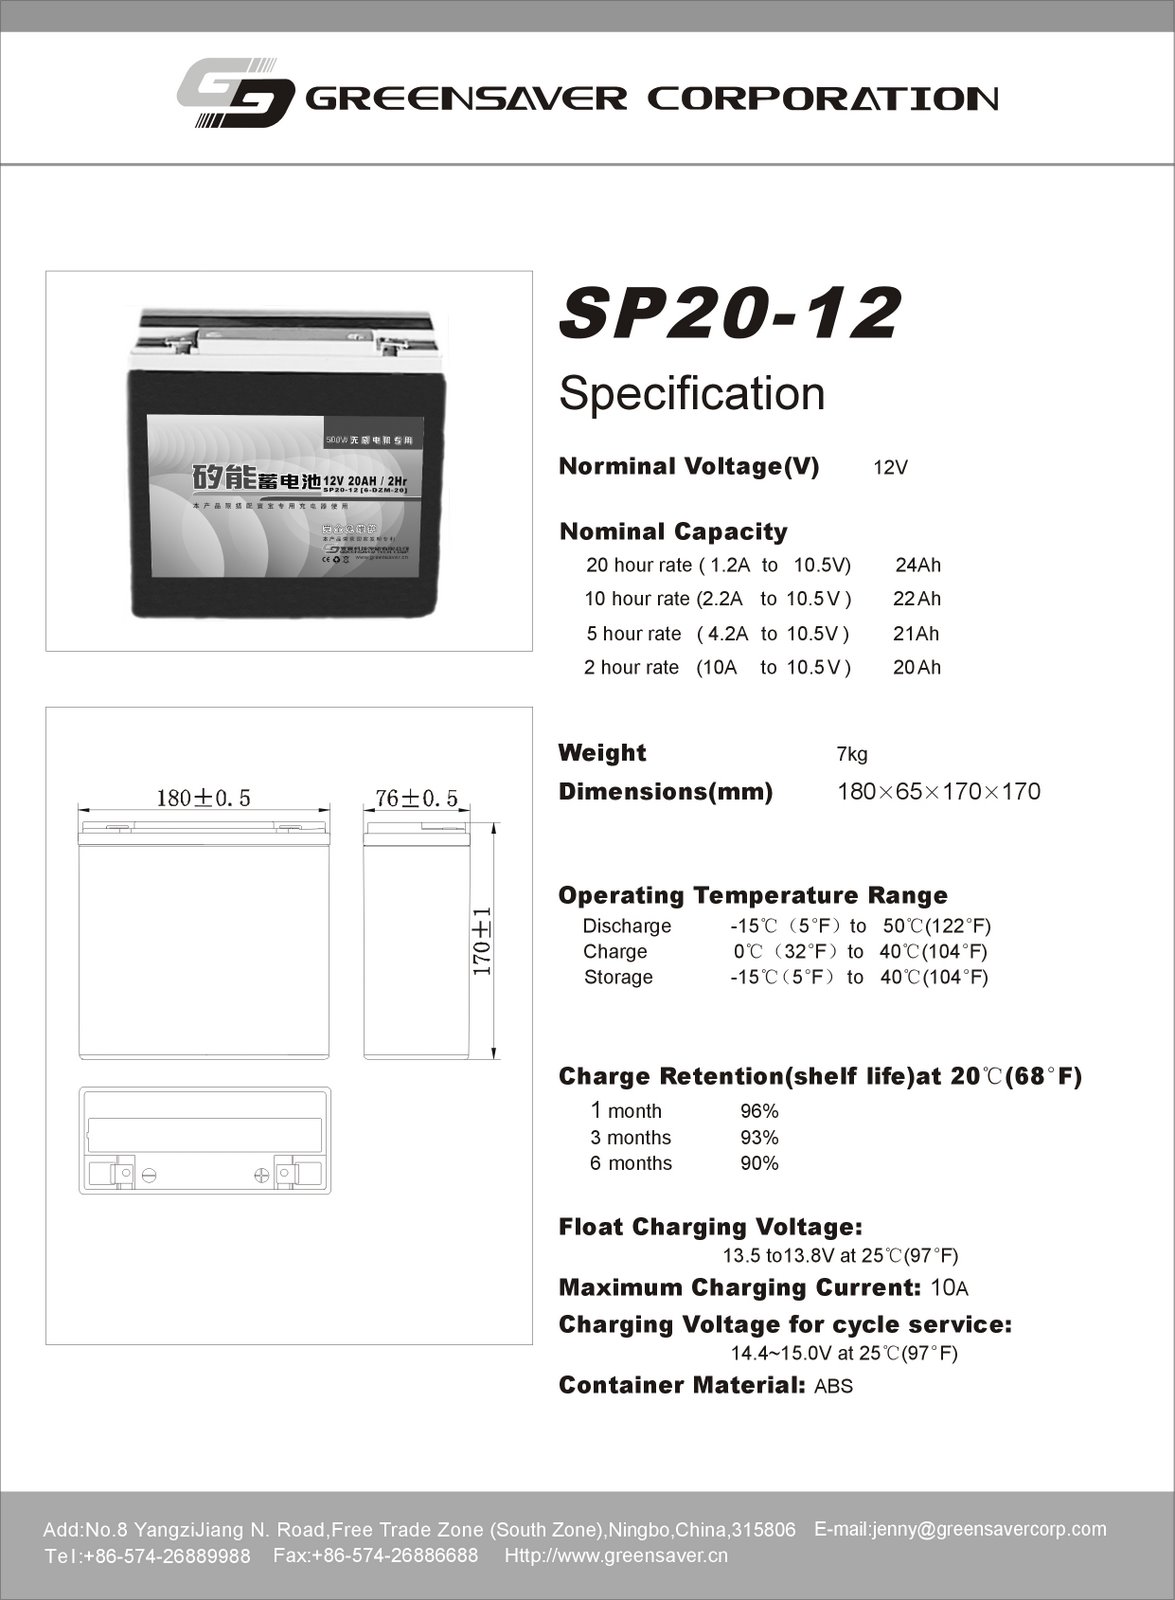 [sp20-12+data+sheet.jpg]